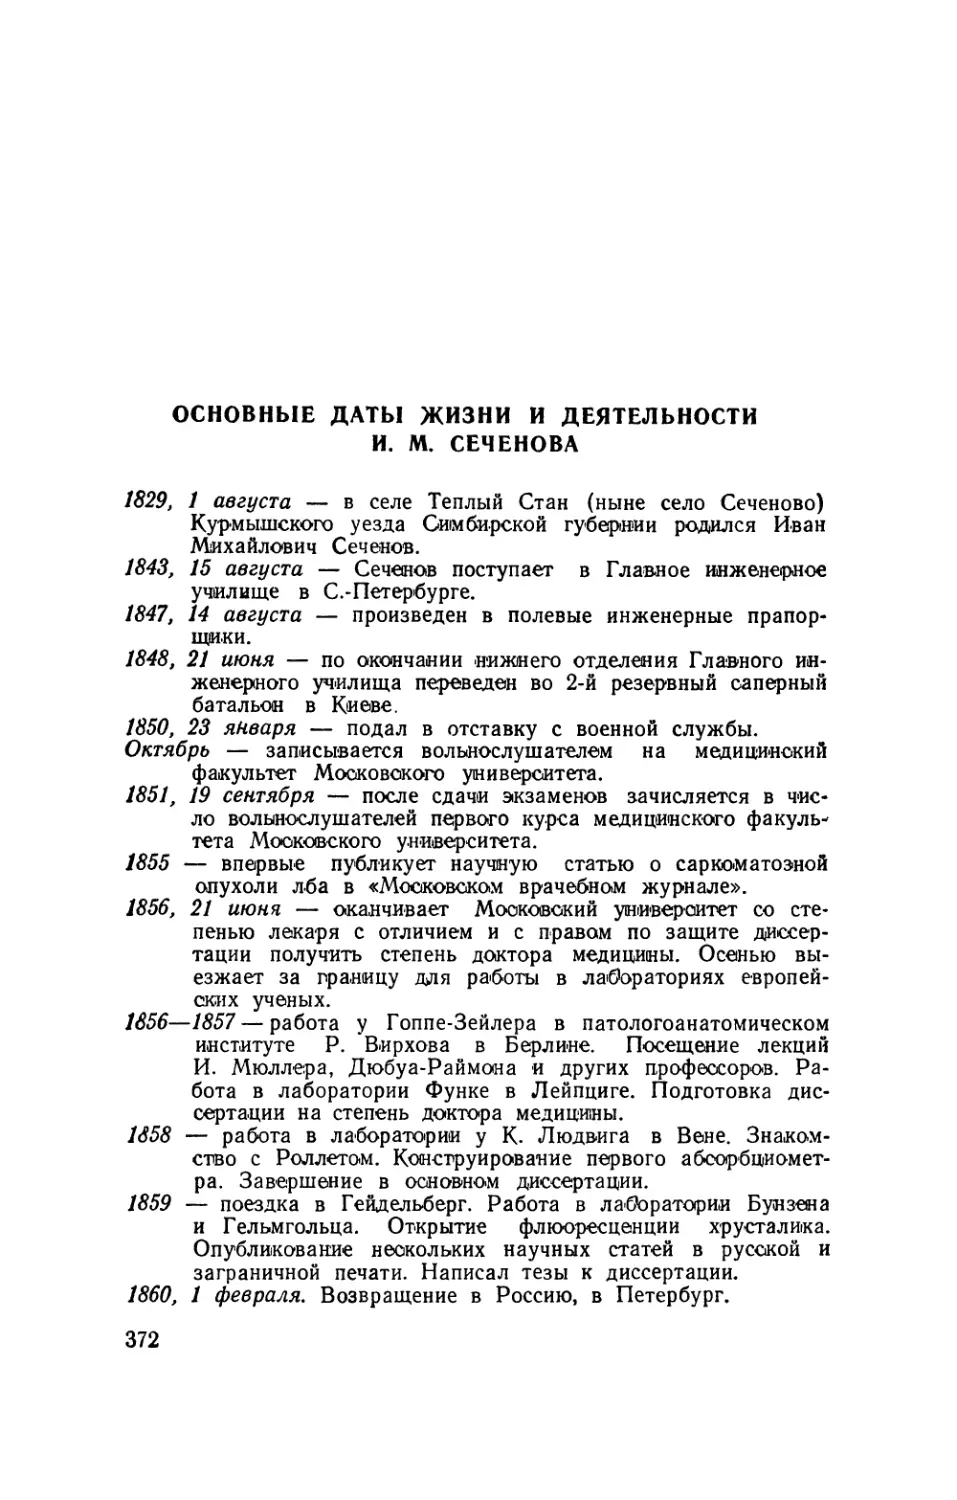 Основные даты жизни и деятельности И. М. Сеченова